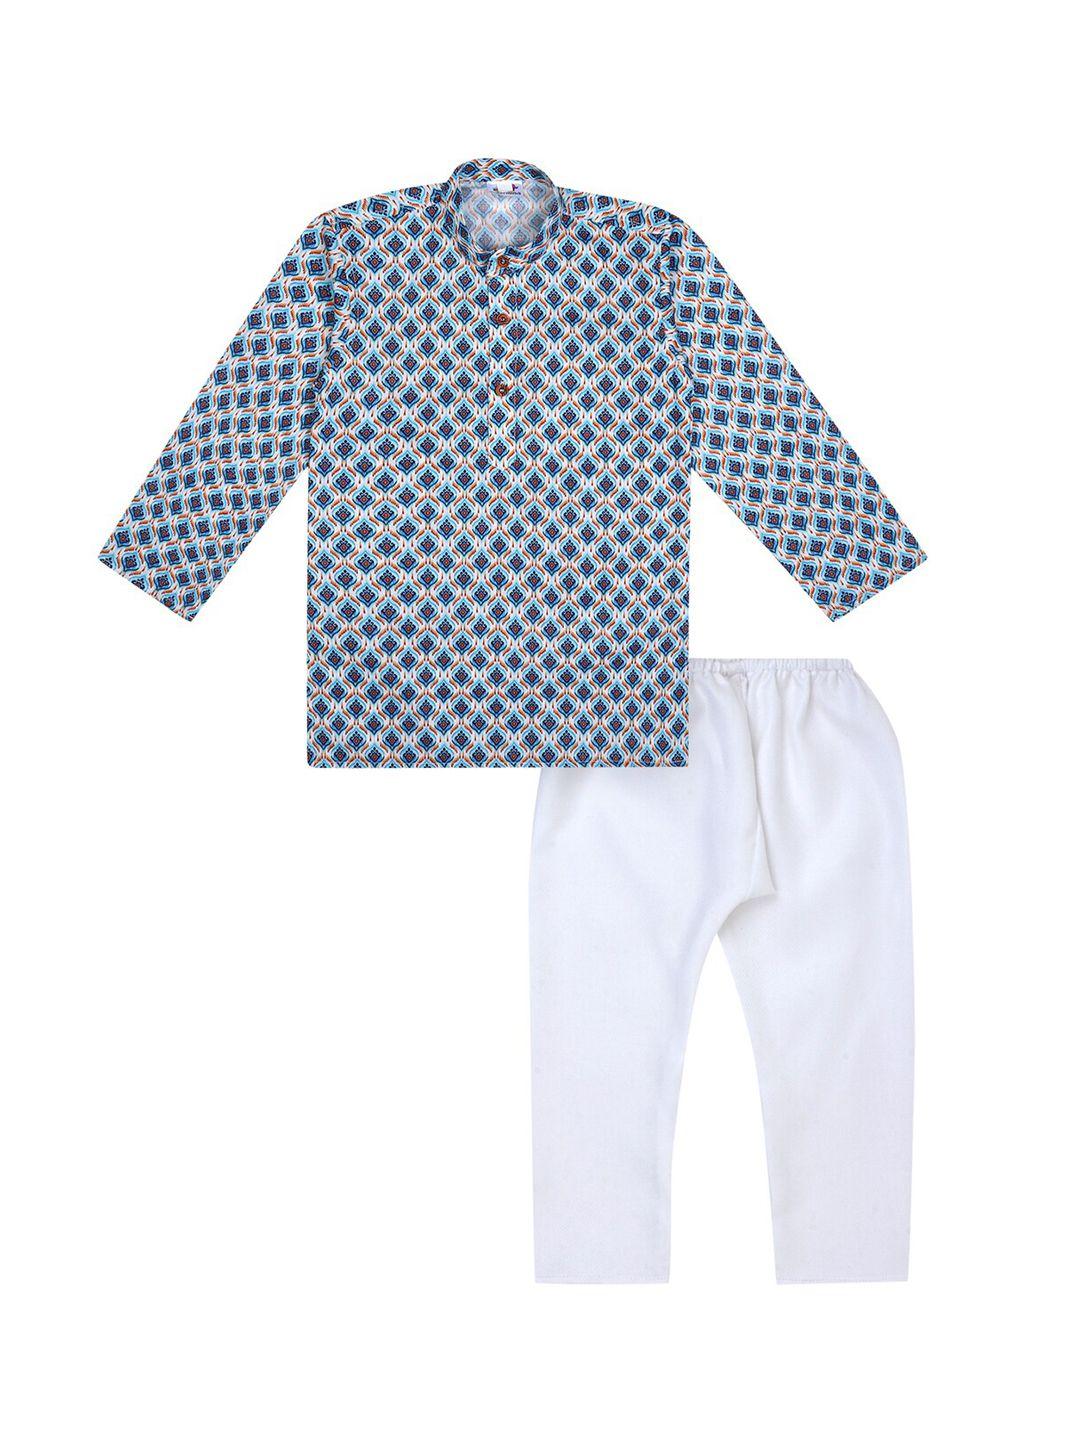 superminis boys blue ethnic motifs printed pure cotton kurta with pyjamas